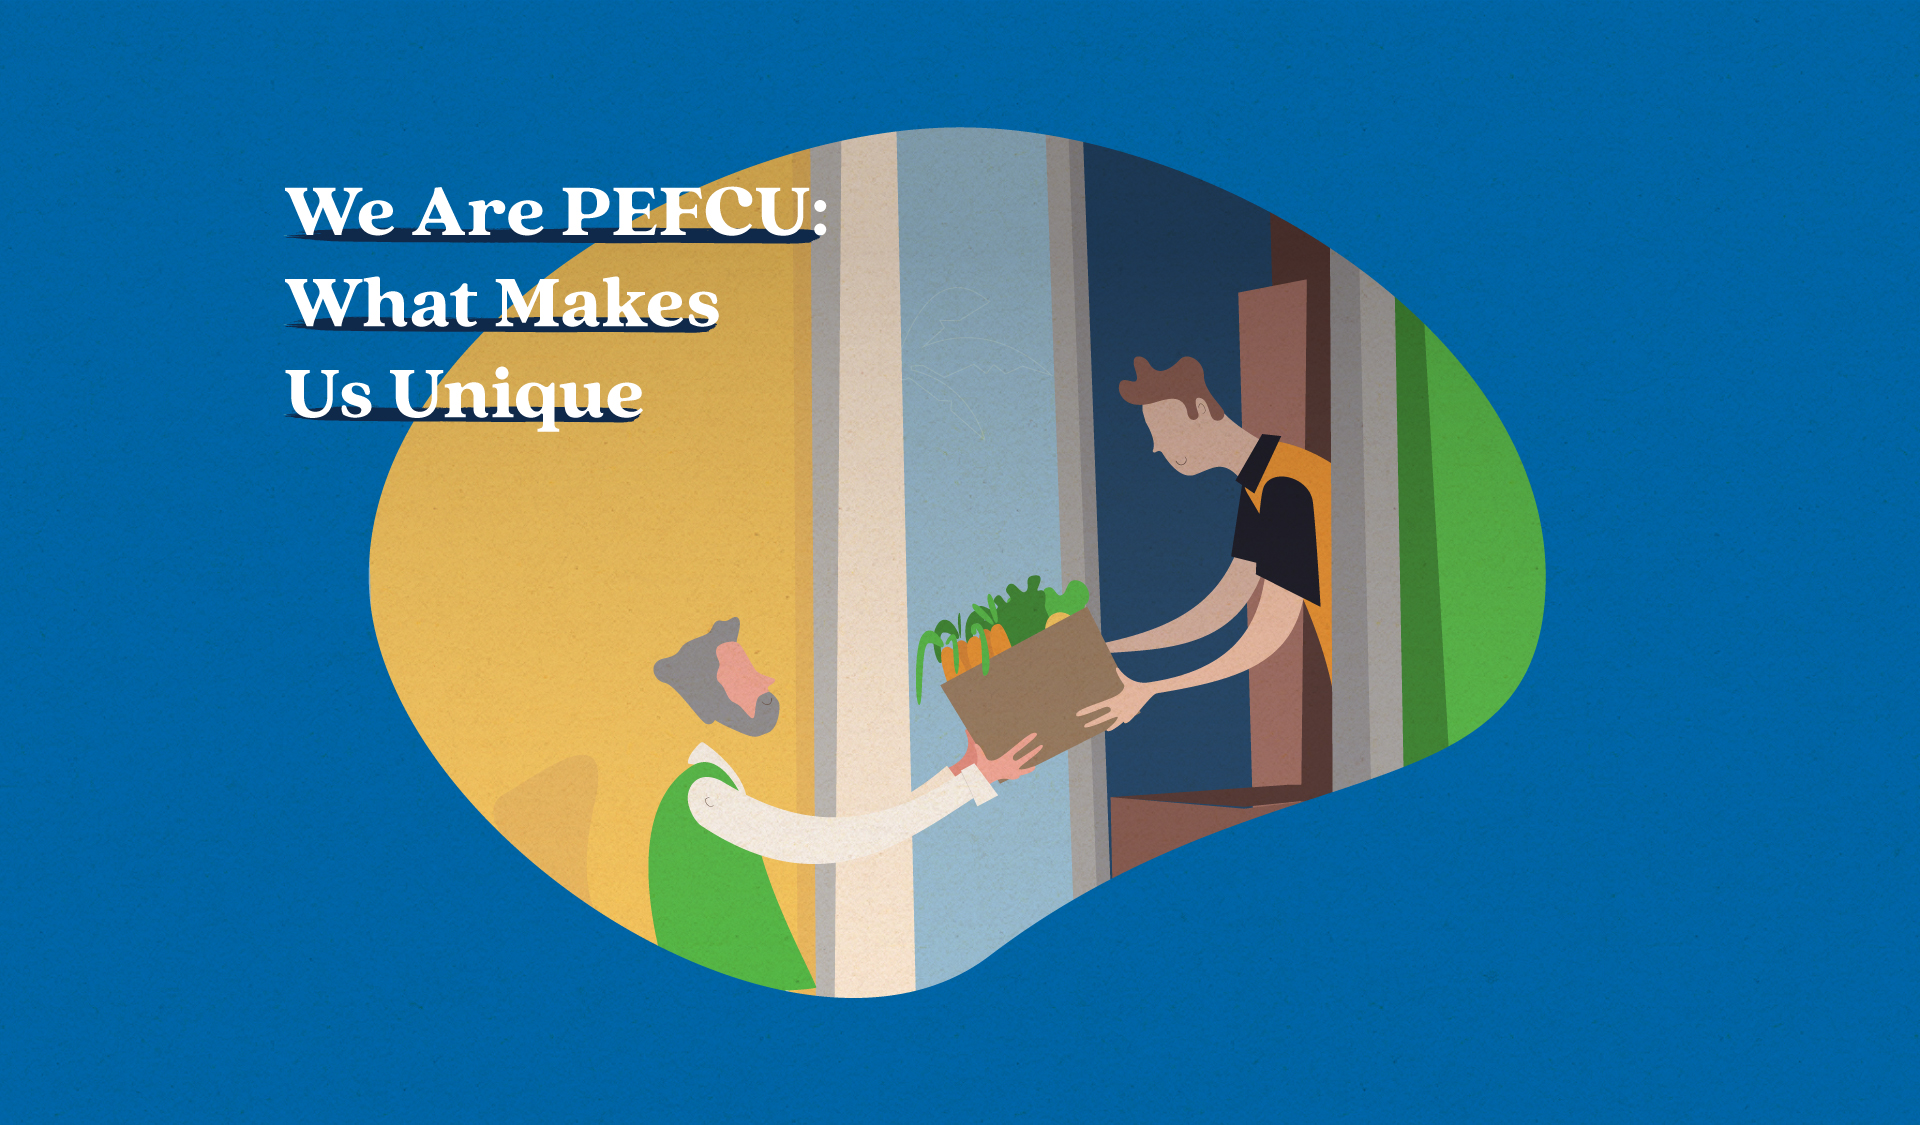 We Are PEFCU: What Makes Us Unique